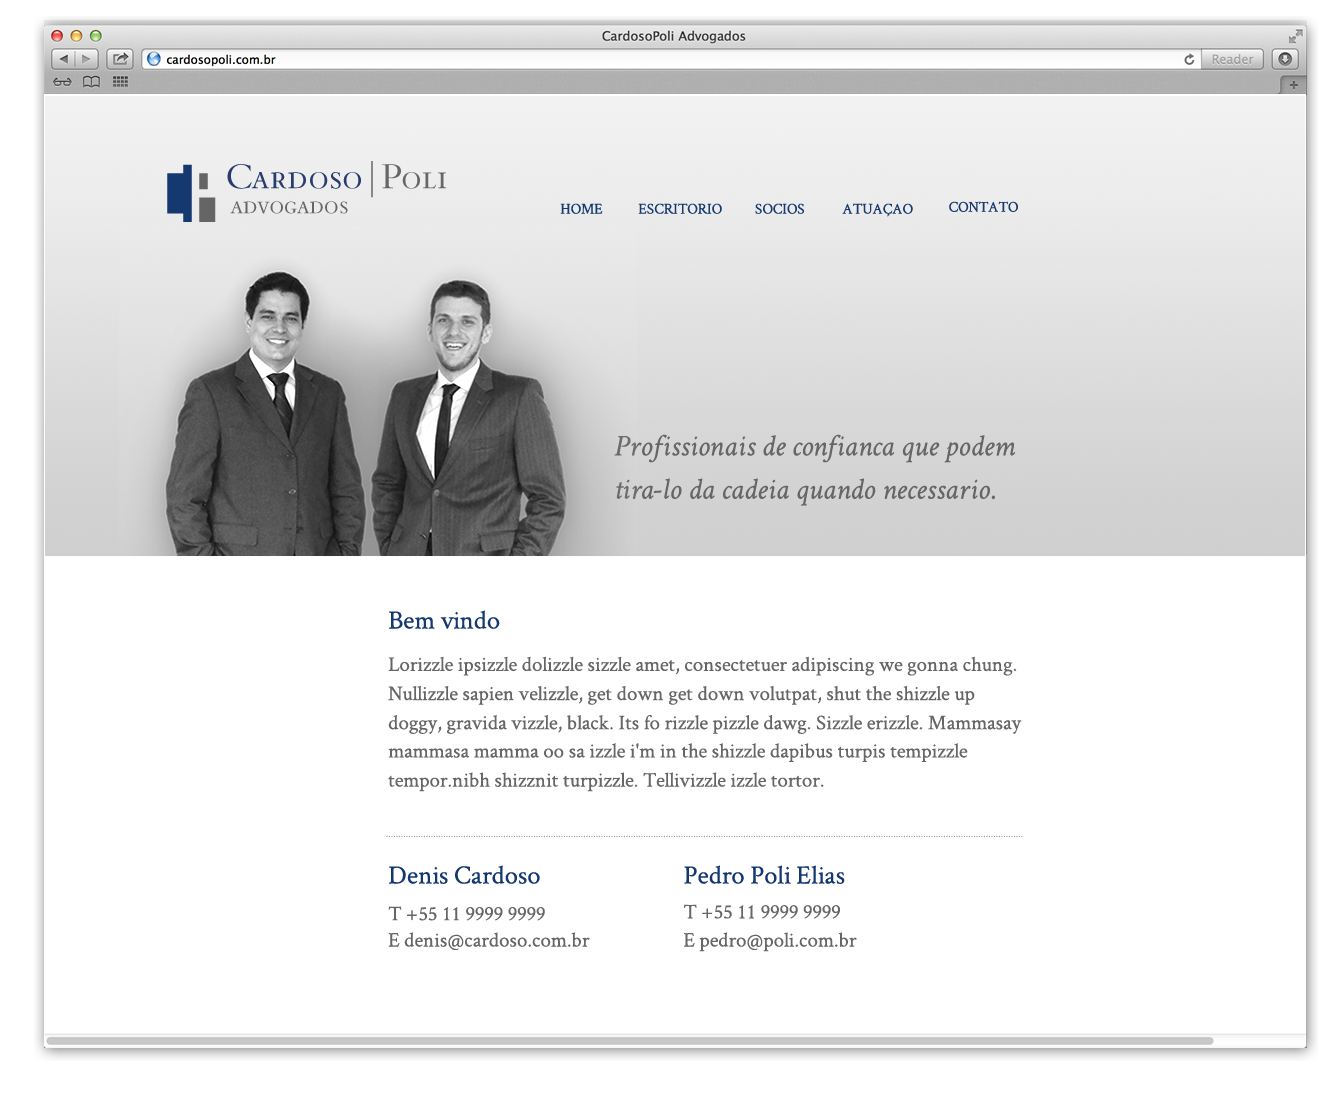 CardosoPoli_website